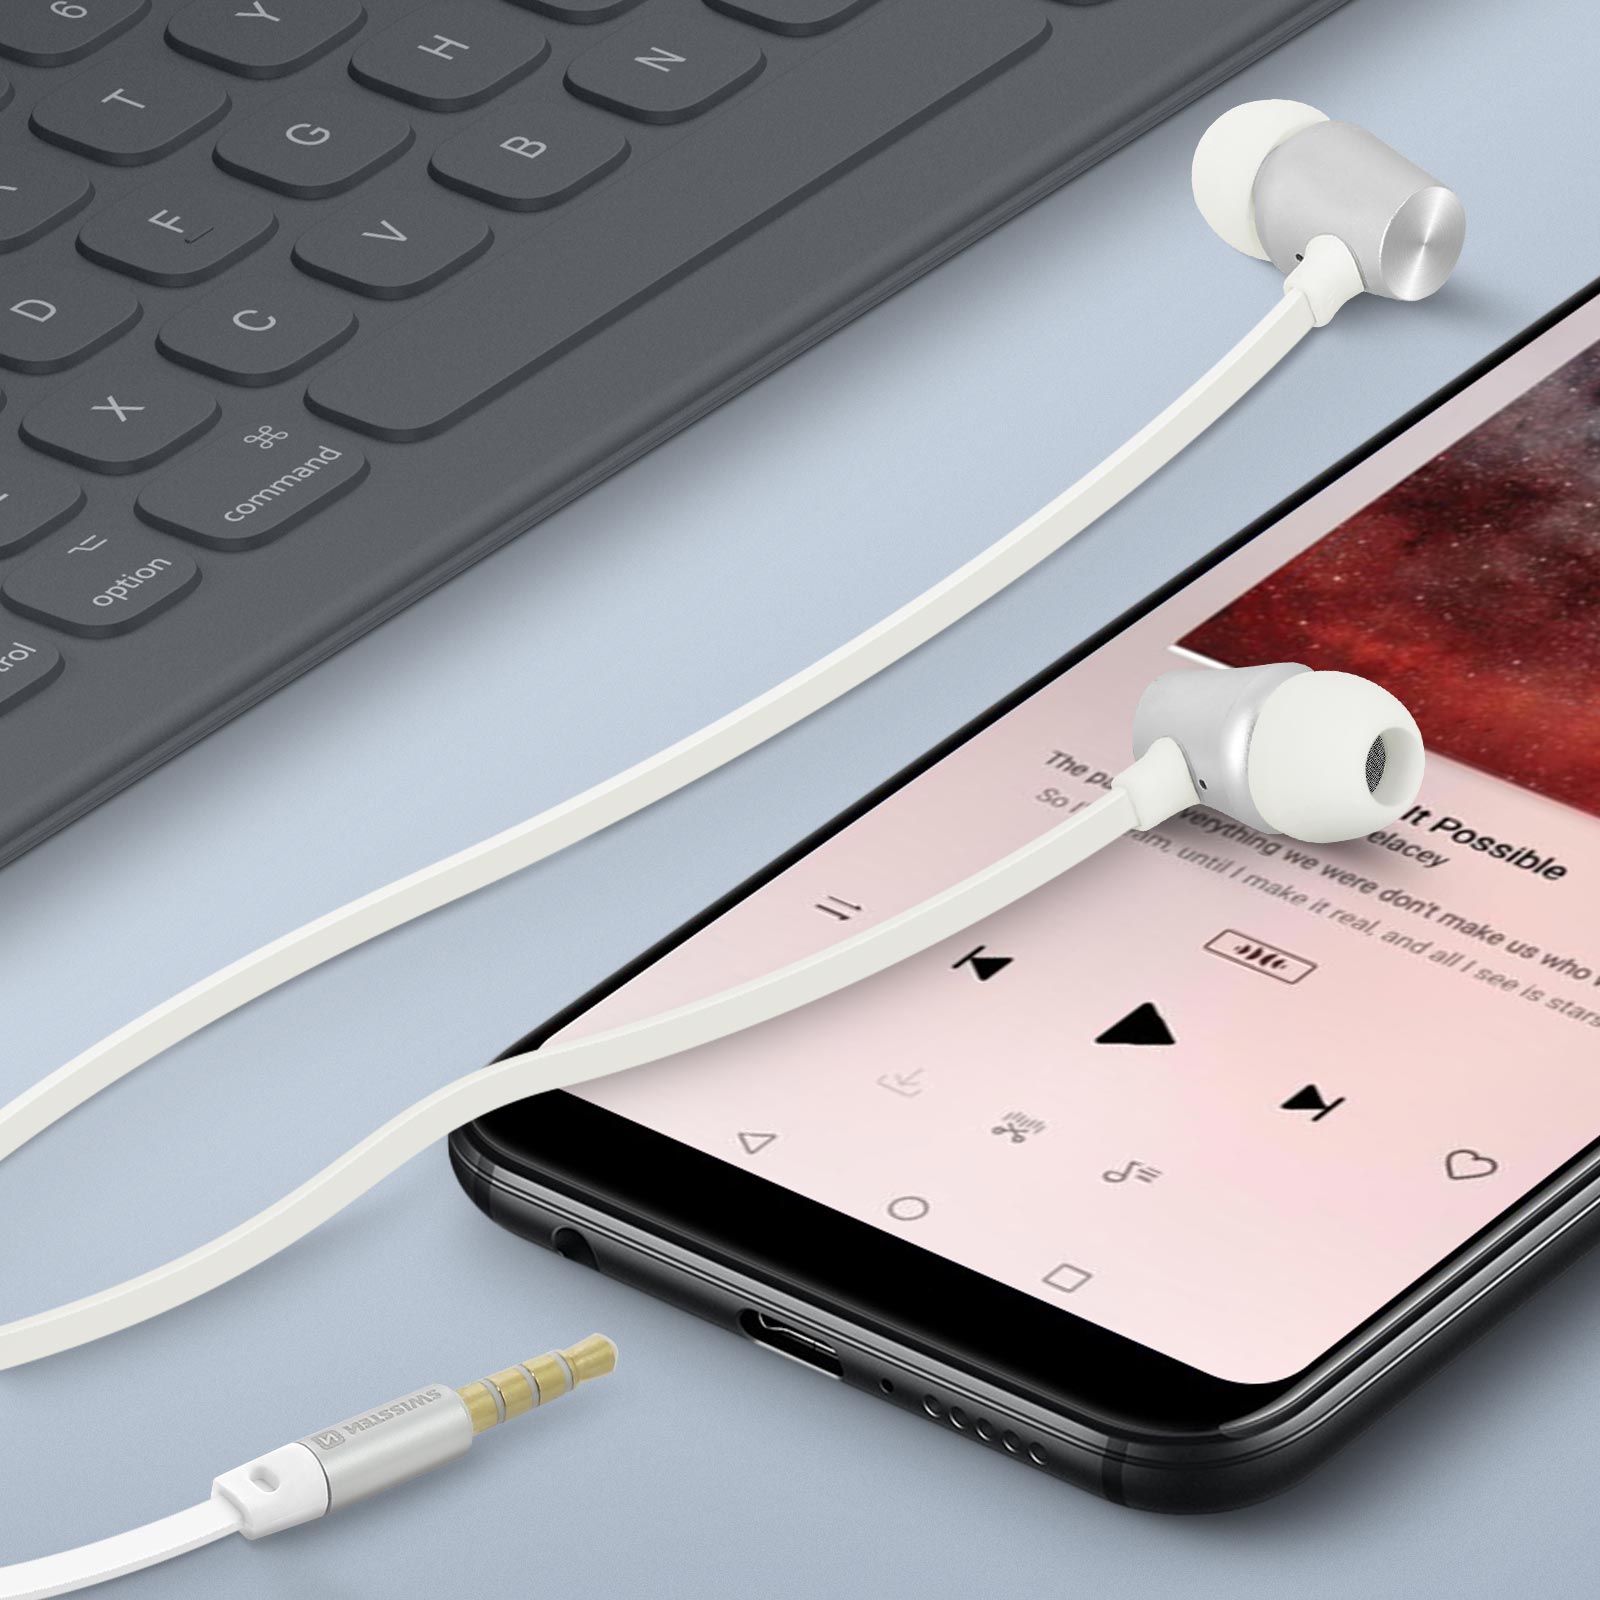 Auriculares compatibles para Apple iPhone iPad con conexión Jack 3.5mm